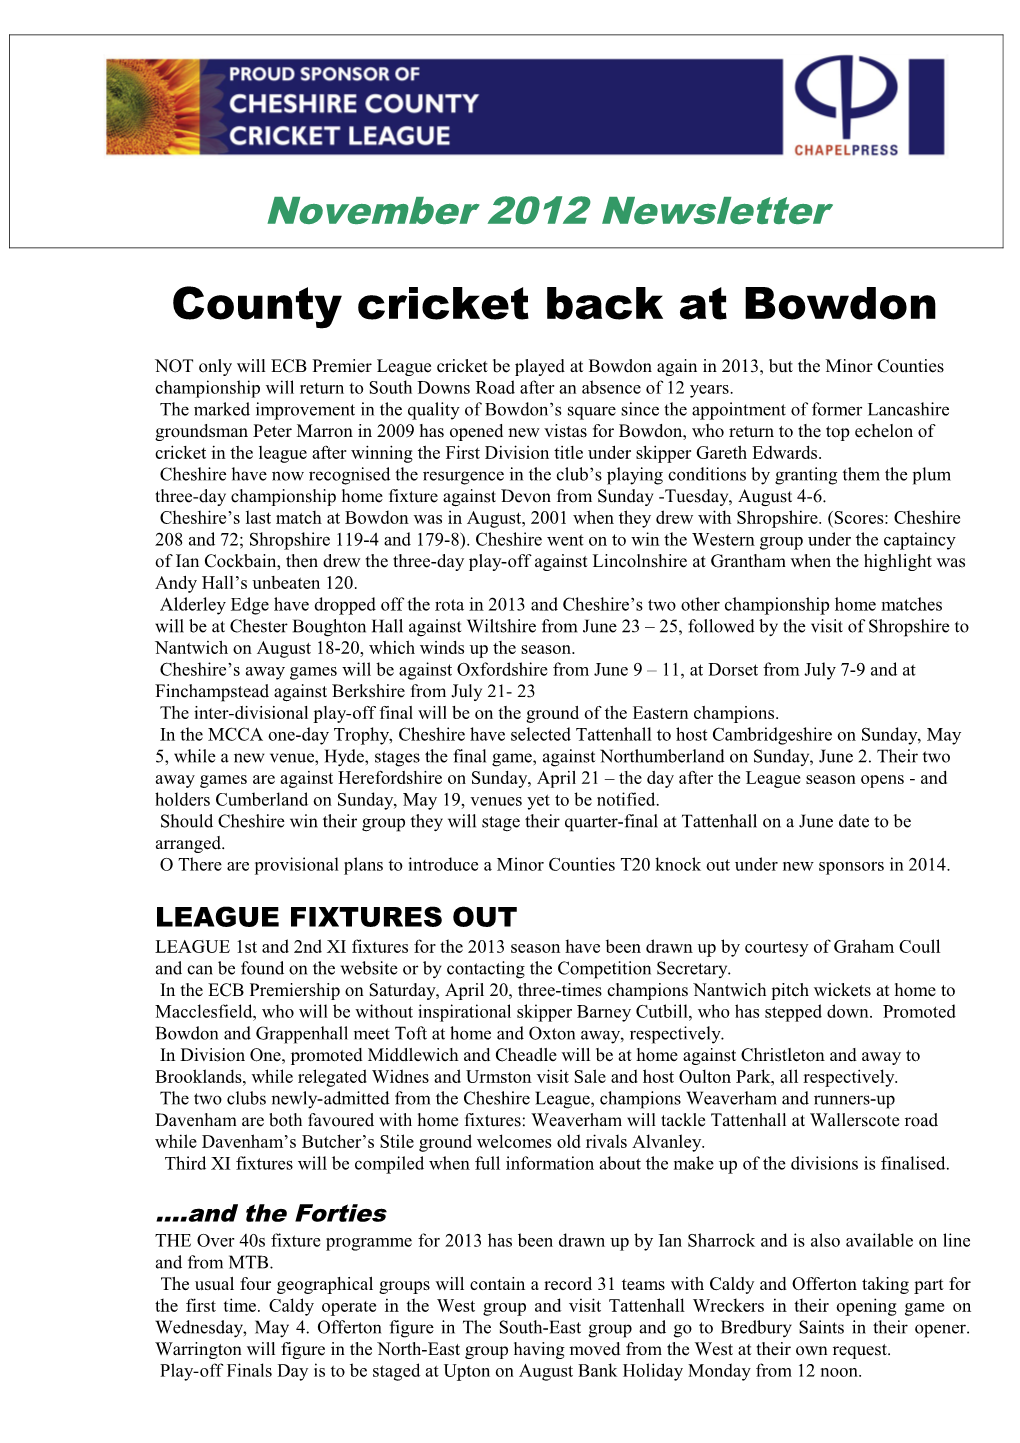 County Cricket Back at Bowdon